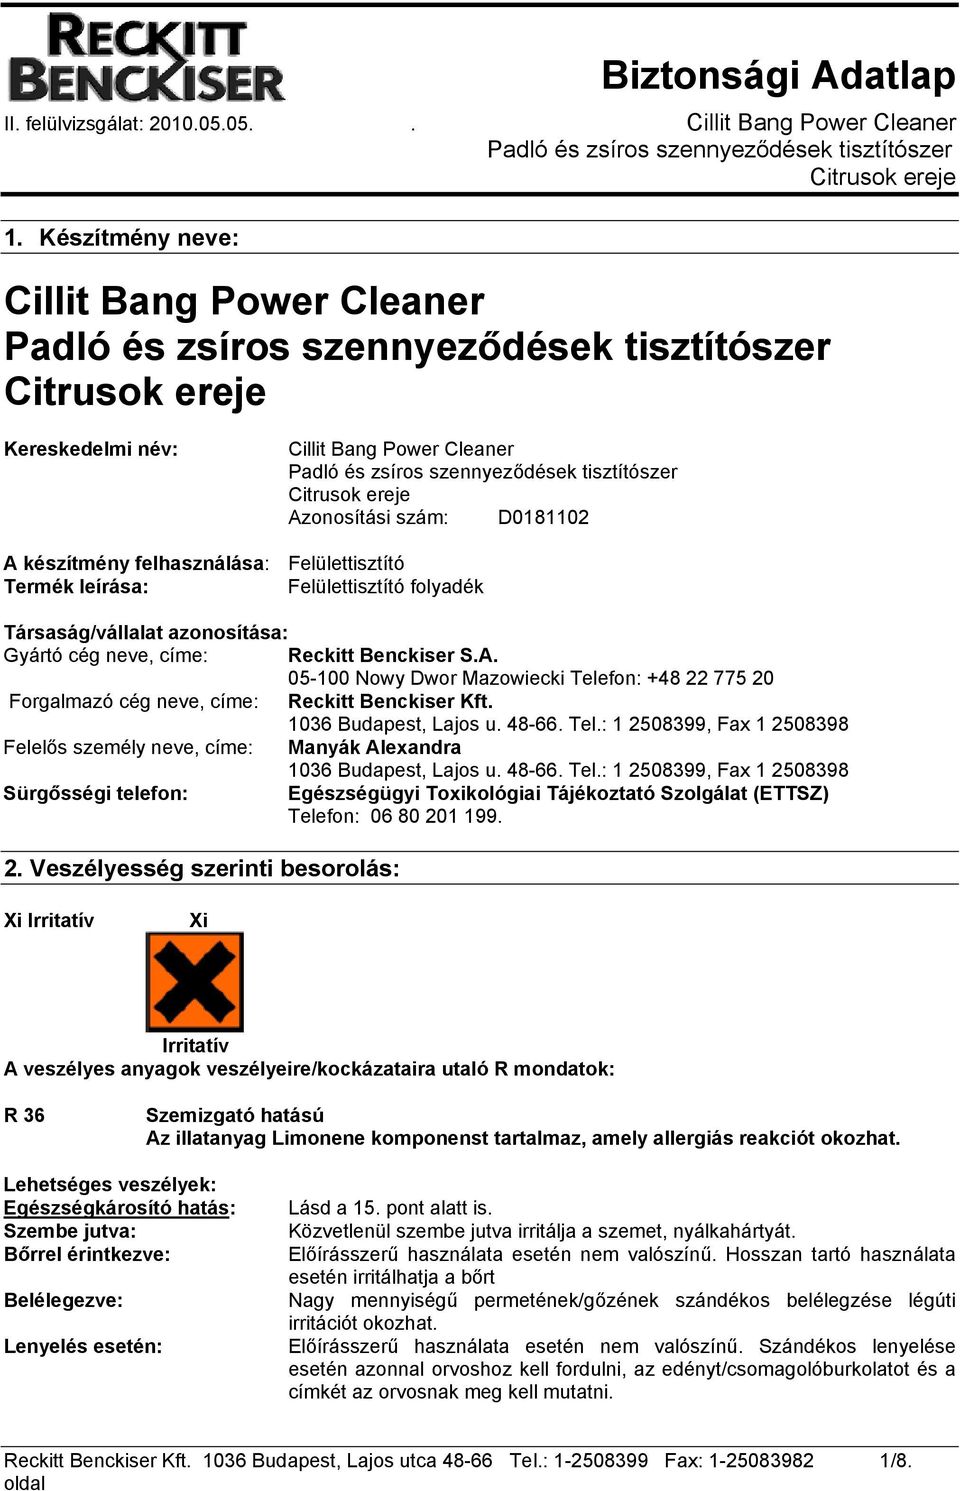 Cillit Bang Power Cleaner Padló és zsíros szennyeződések tisztítószer  Citrusok ereje - PDF Ingyenes letöltés